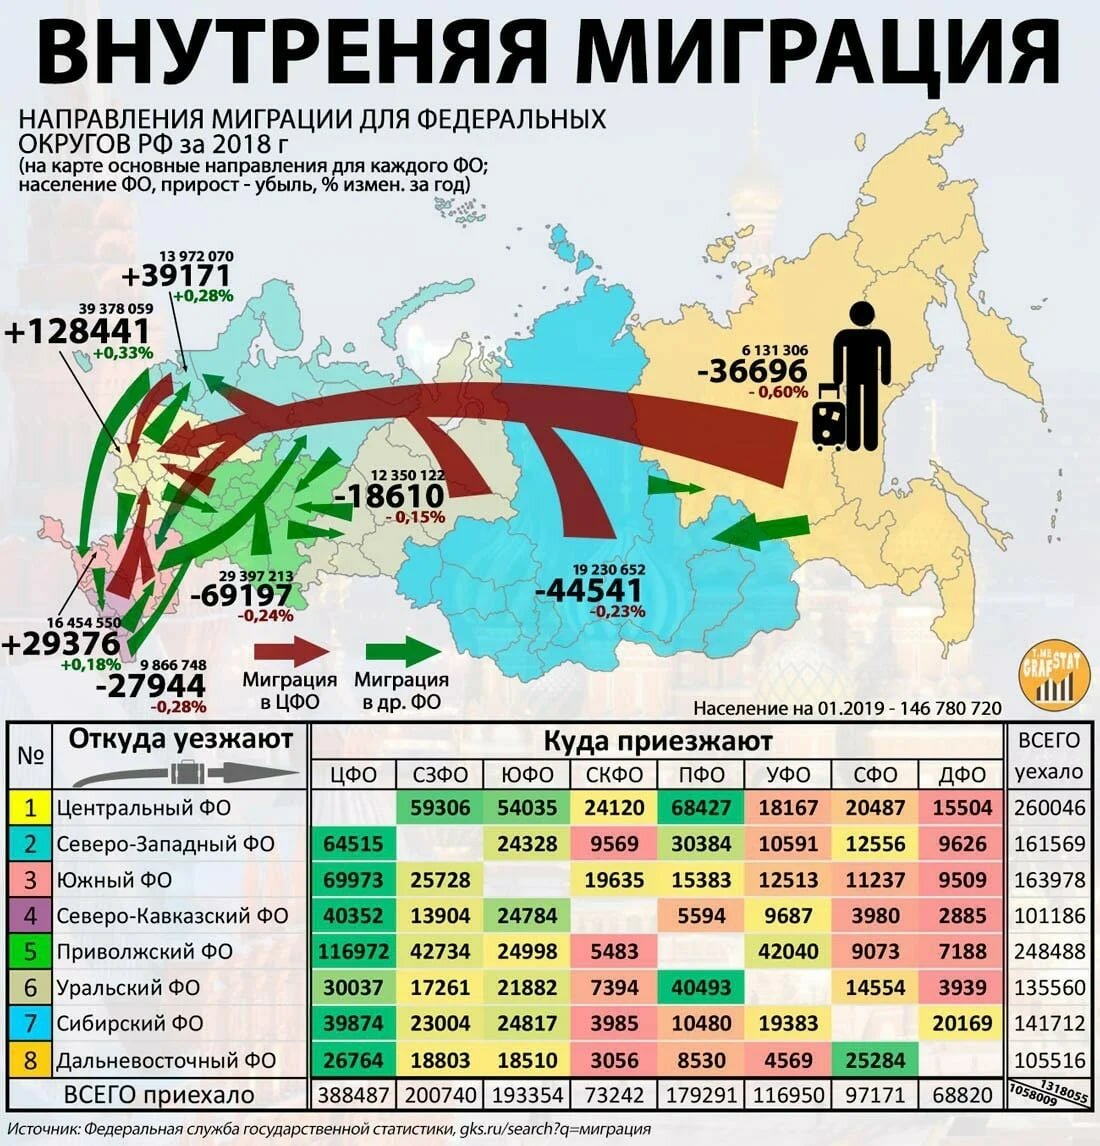 Численность населения стран 2000 год. Карта миграции населения России 2020. Карта миграции населения России 2021. Карта внутренней миграции России 2020. Внутренняя миграция в России 2020.